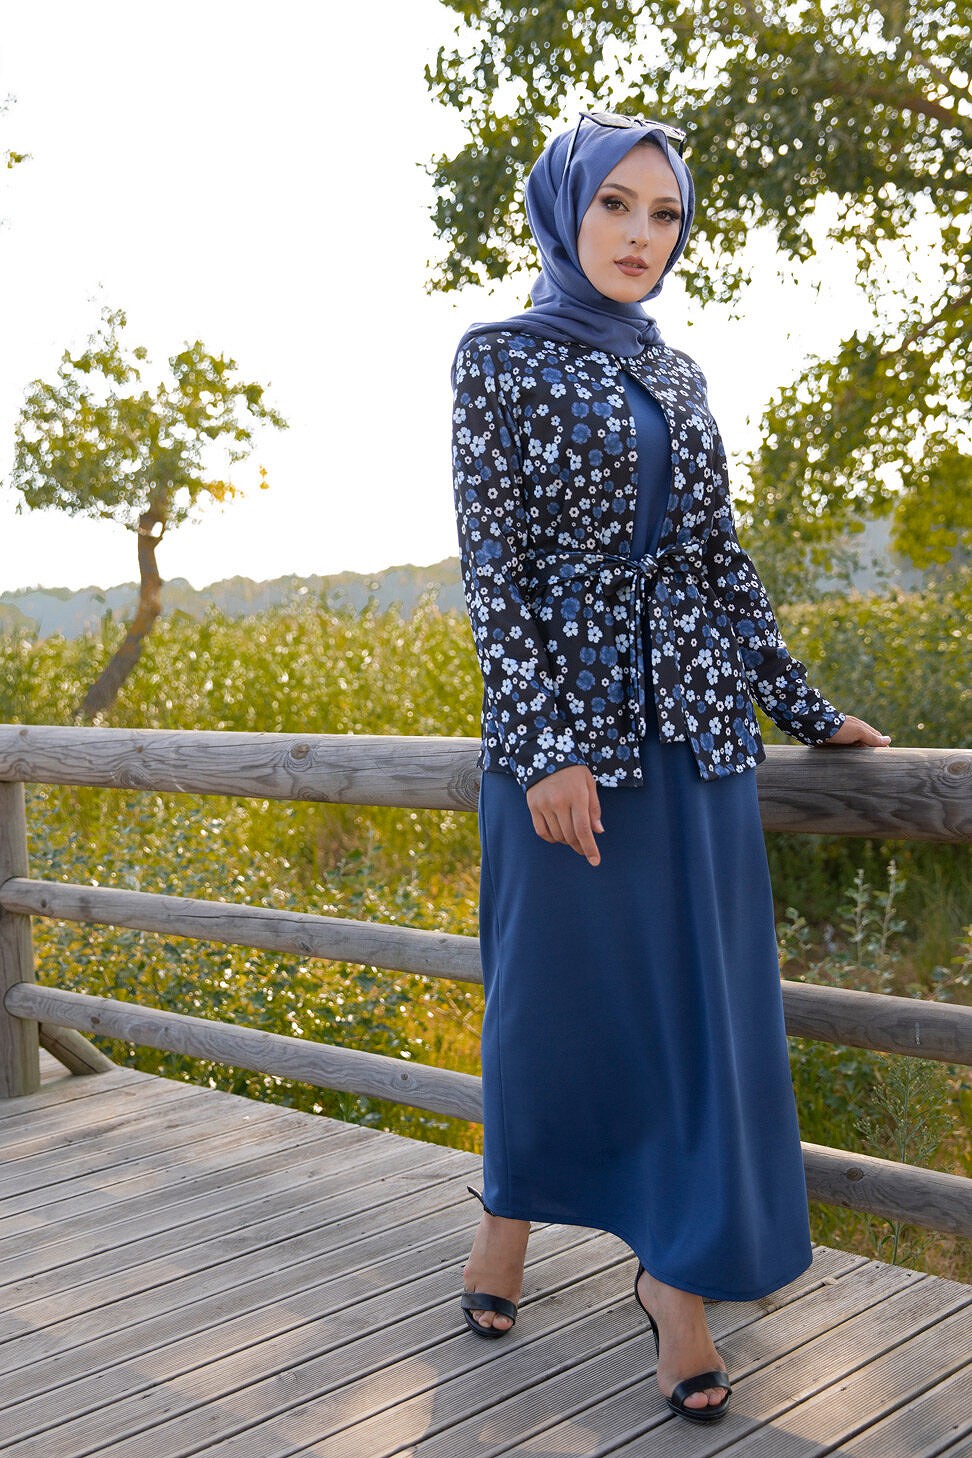 Acheter, 2 pièces, Ensemble de femme musulmane rayée survêtement Sport mode  modeste Hijab ensembles vêtements pour femmes turques dubaï Abaya vêtements  musulmans Djellaba